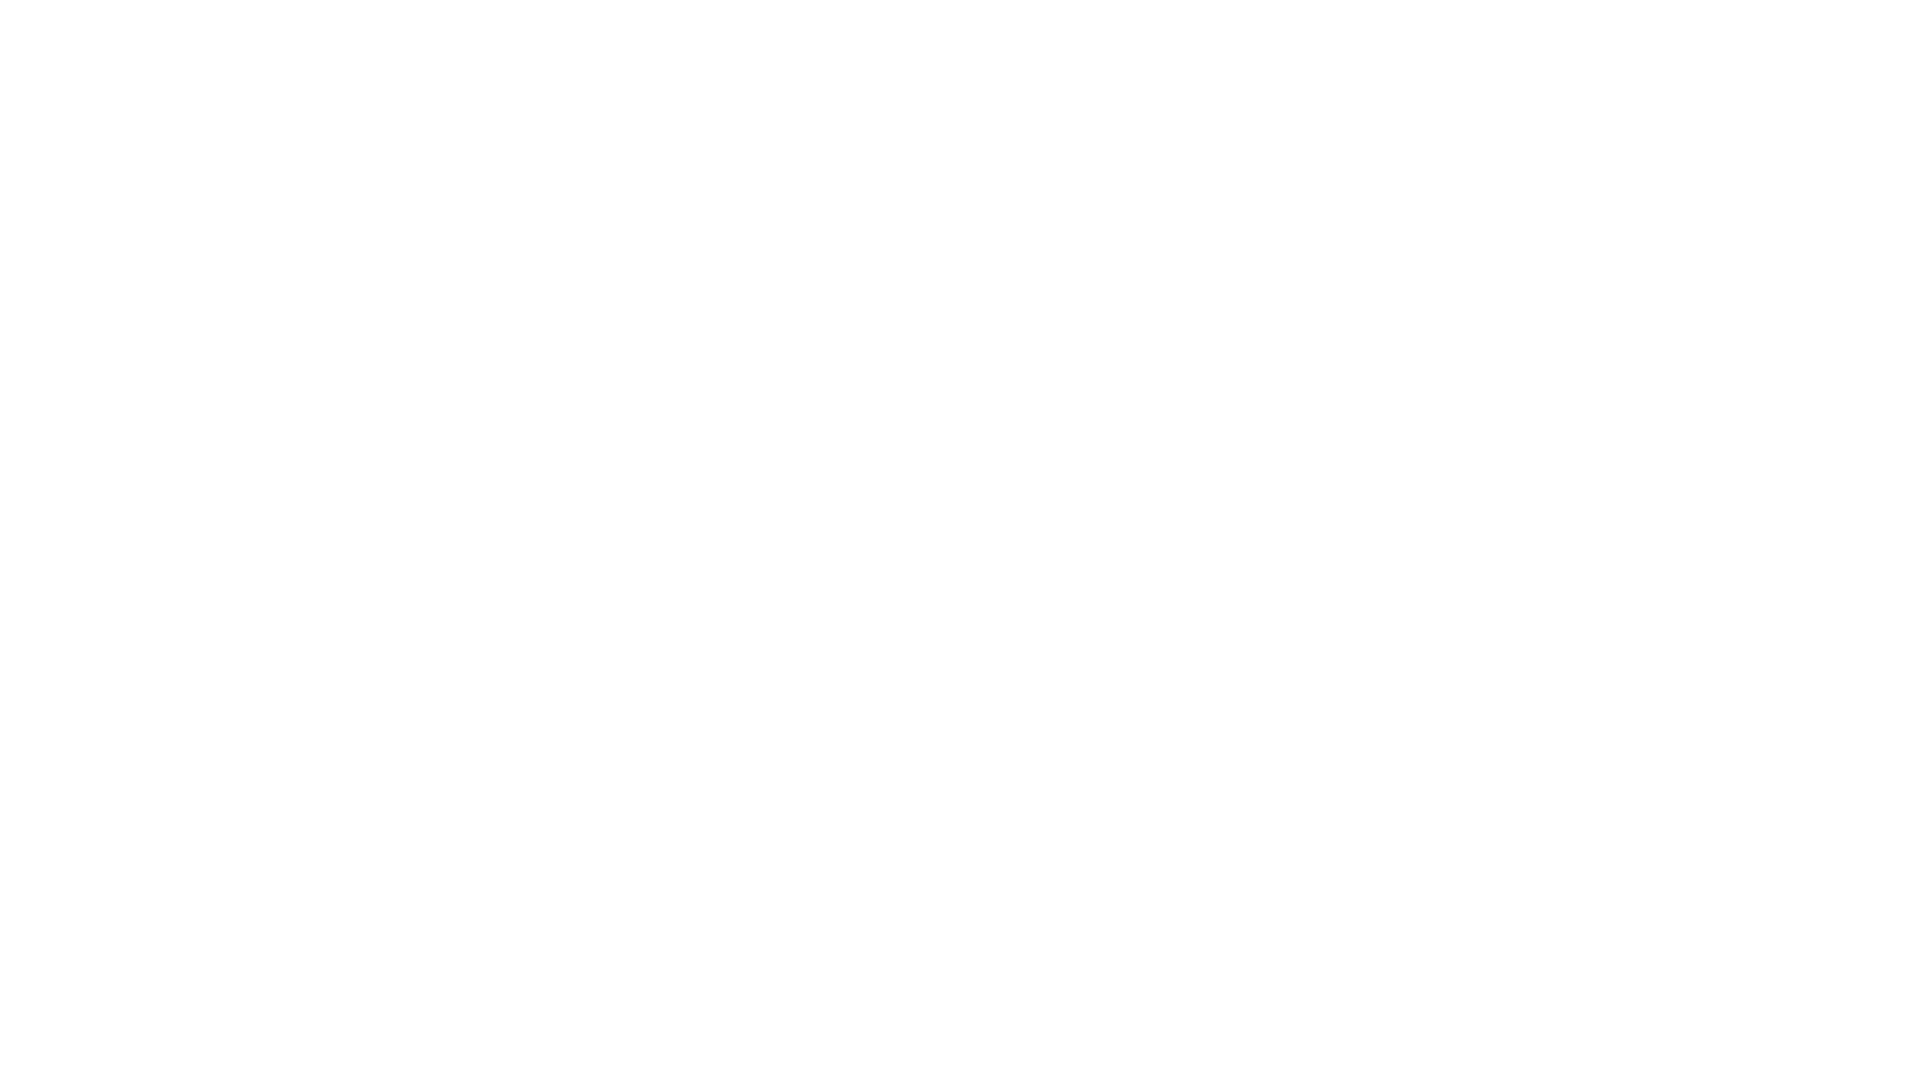 Get Heard! Academy